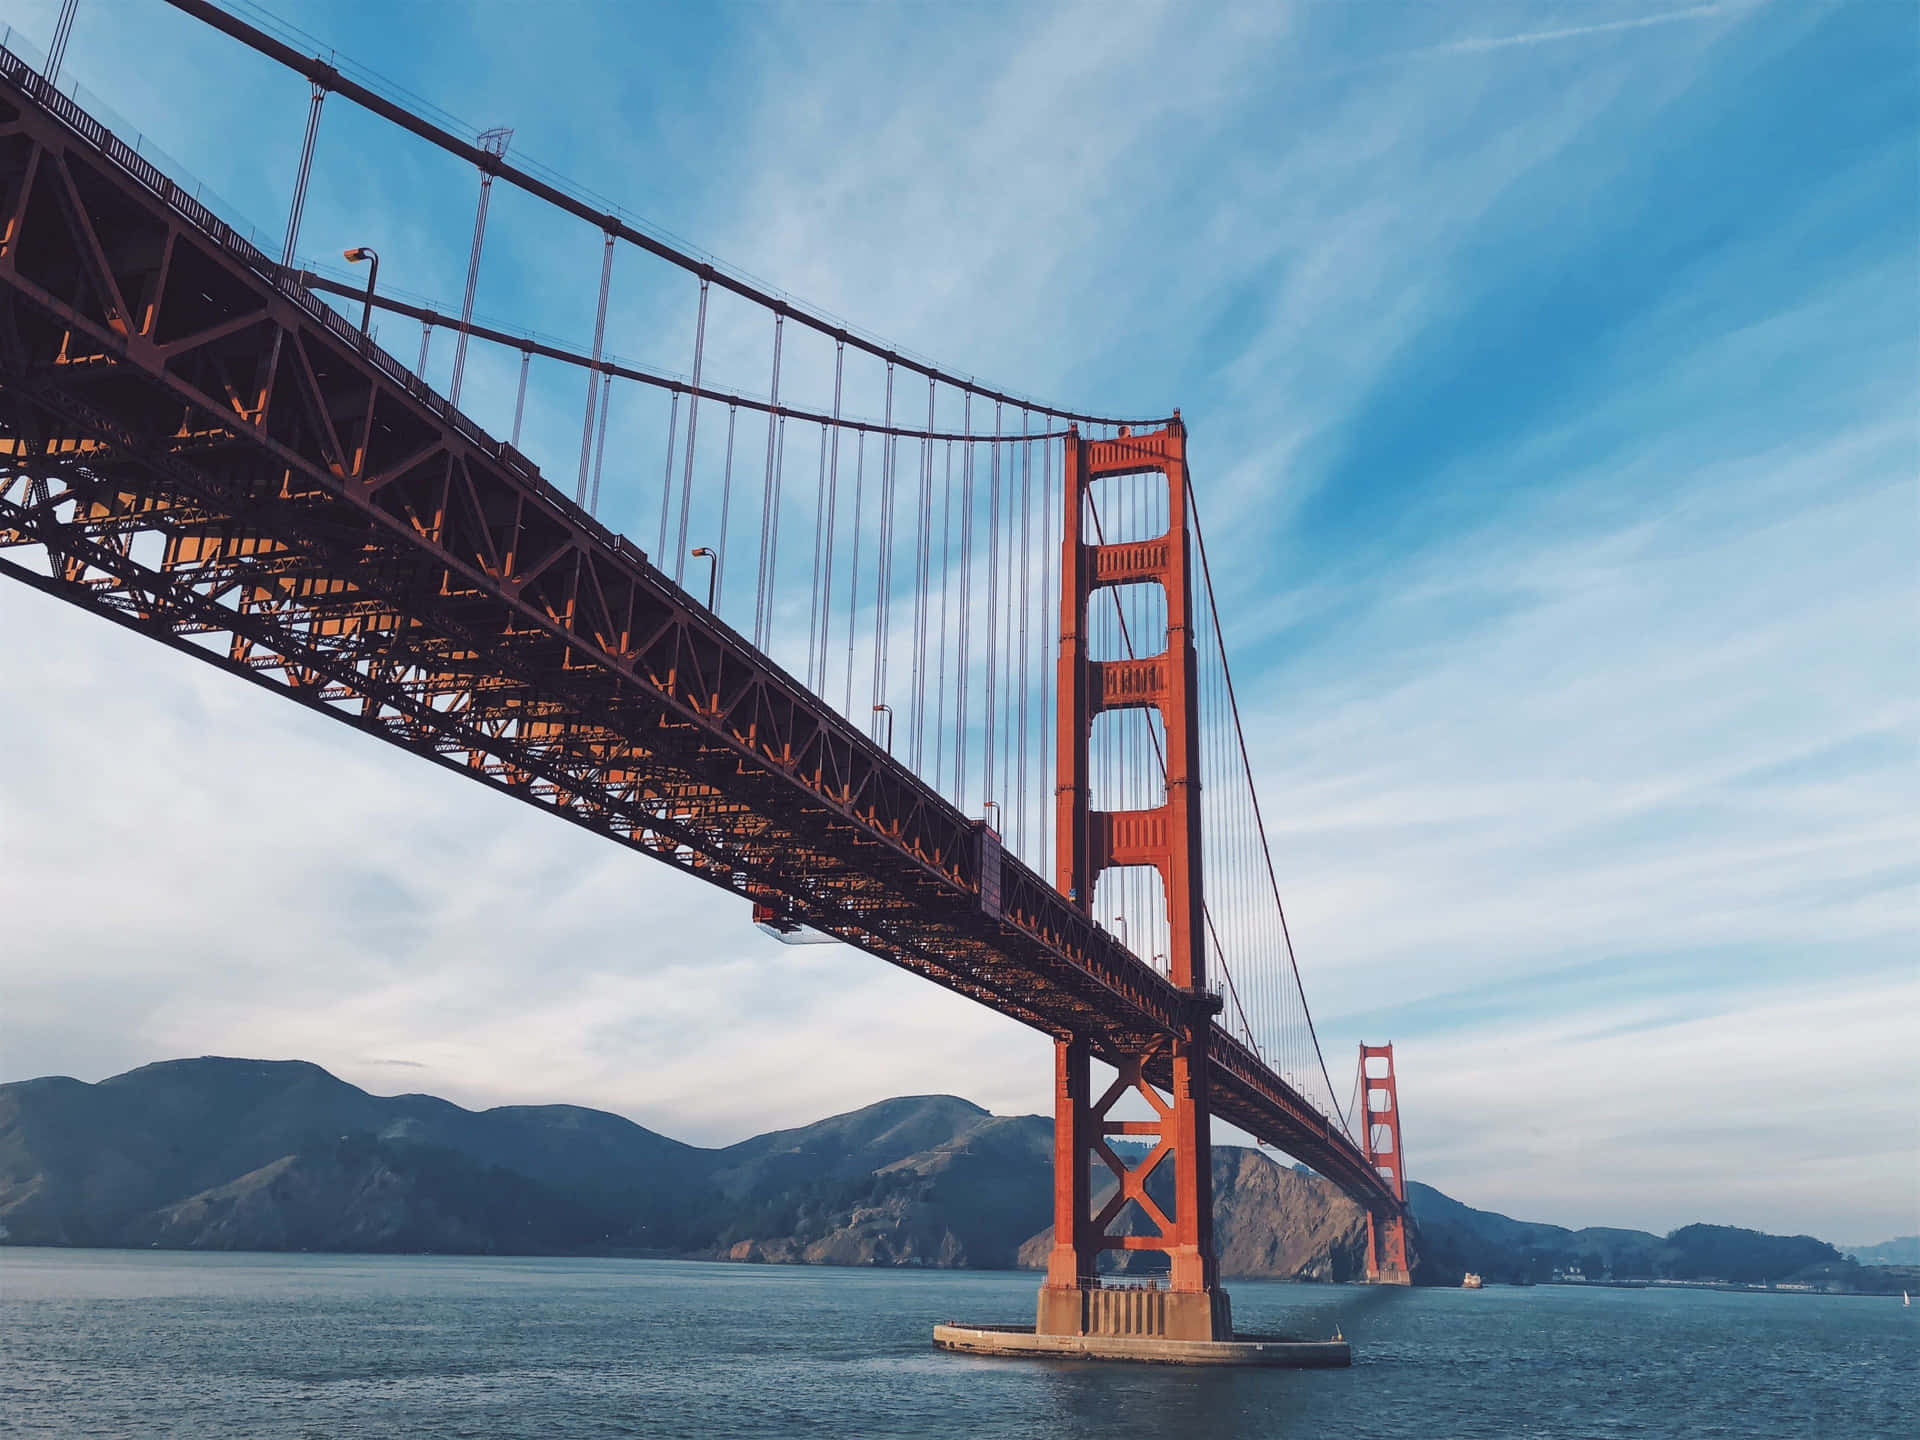 Imponentepuente Golden Gate, El Mejor Fondo De San Francisco